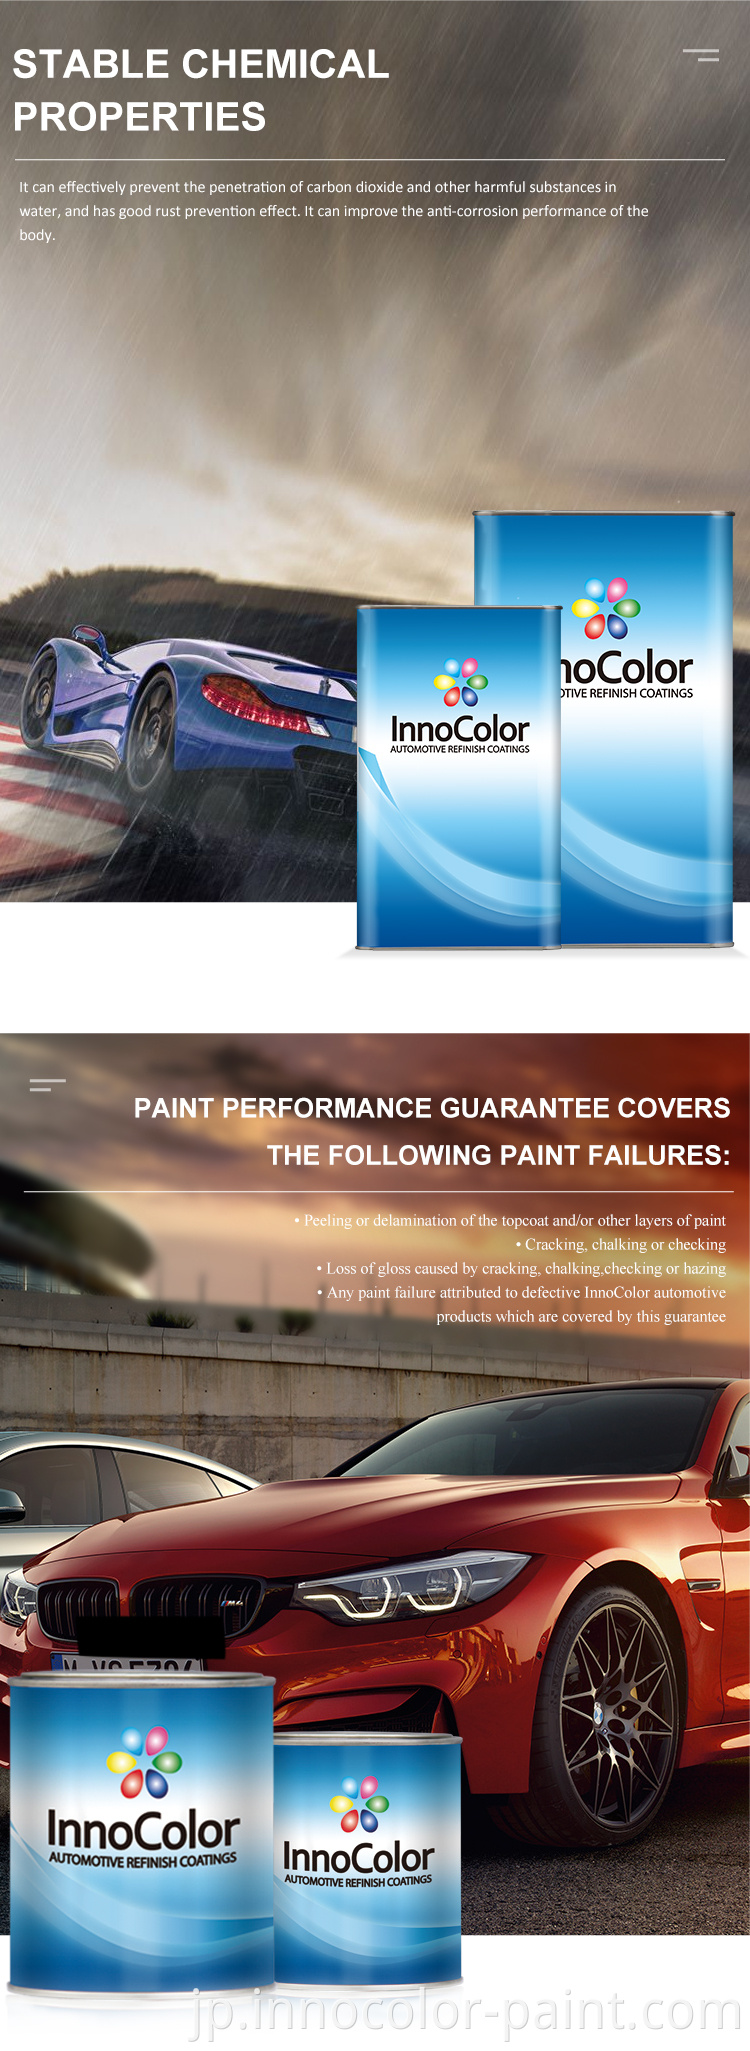 カーペイントInnocolor China Leading Brand 2K Nano Car Coating Automotive Refinish Car Paint